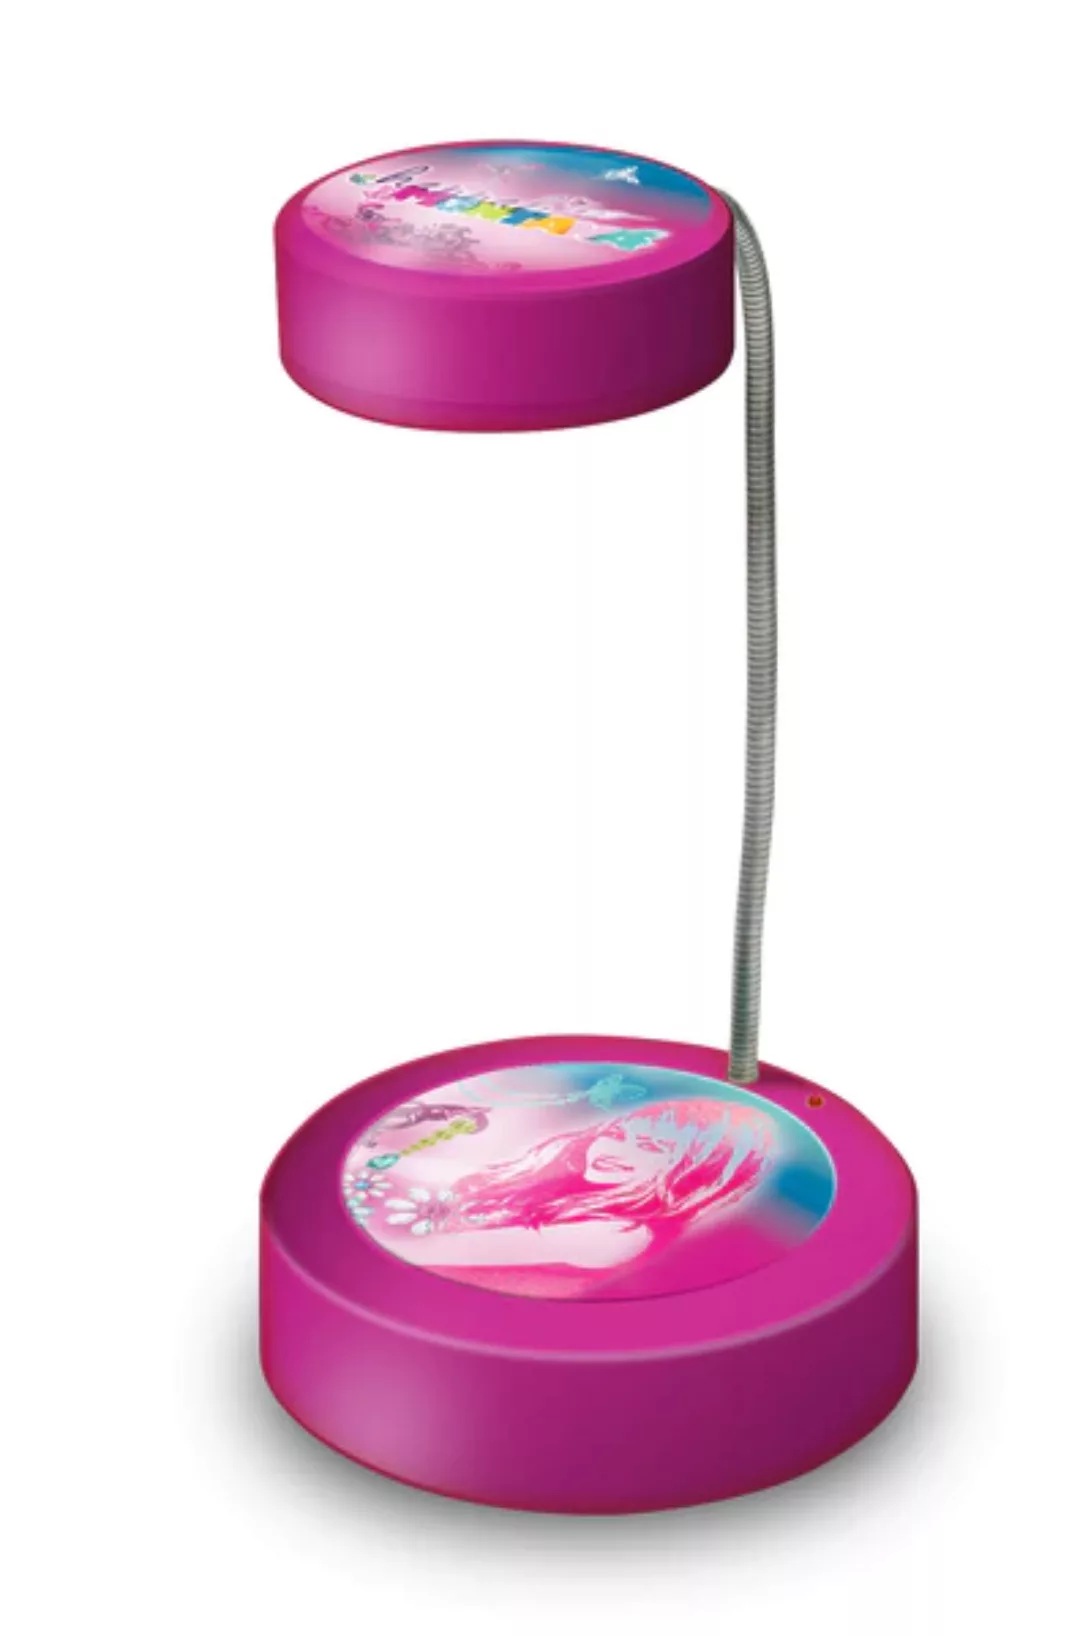 Kinder Nachttischlampe Hannah Montana Höhe 22,5 cm pink 1-flammig rund günstig online kaufen